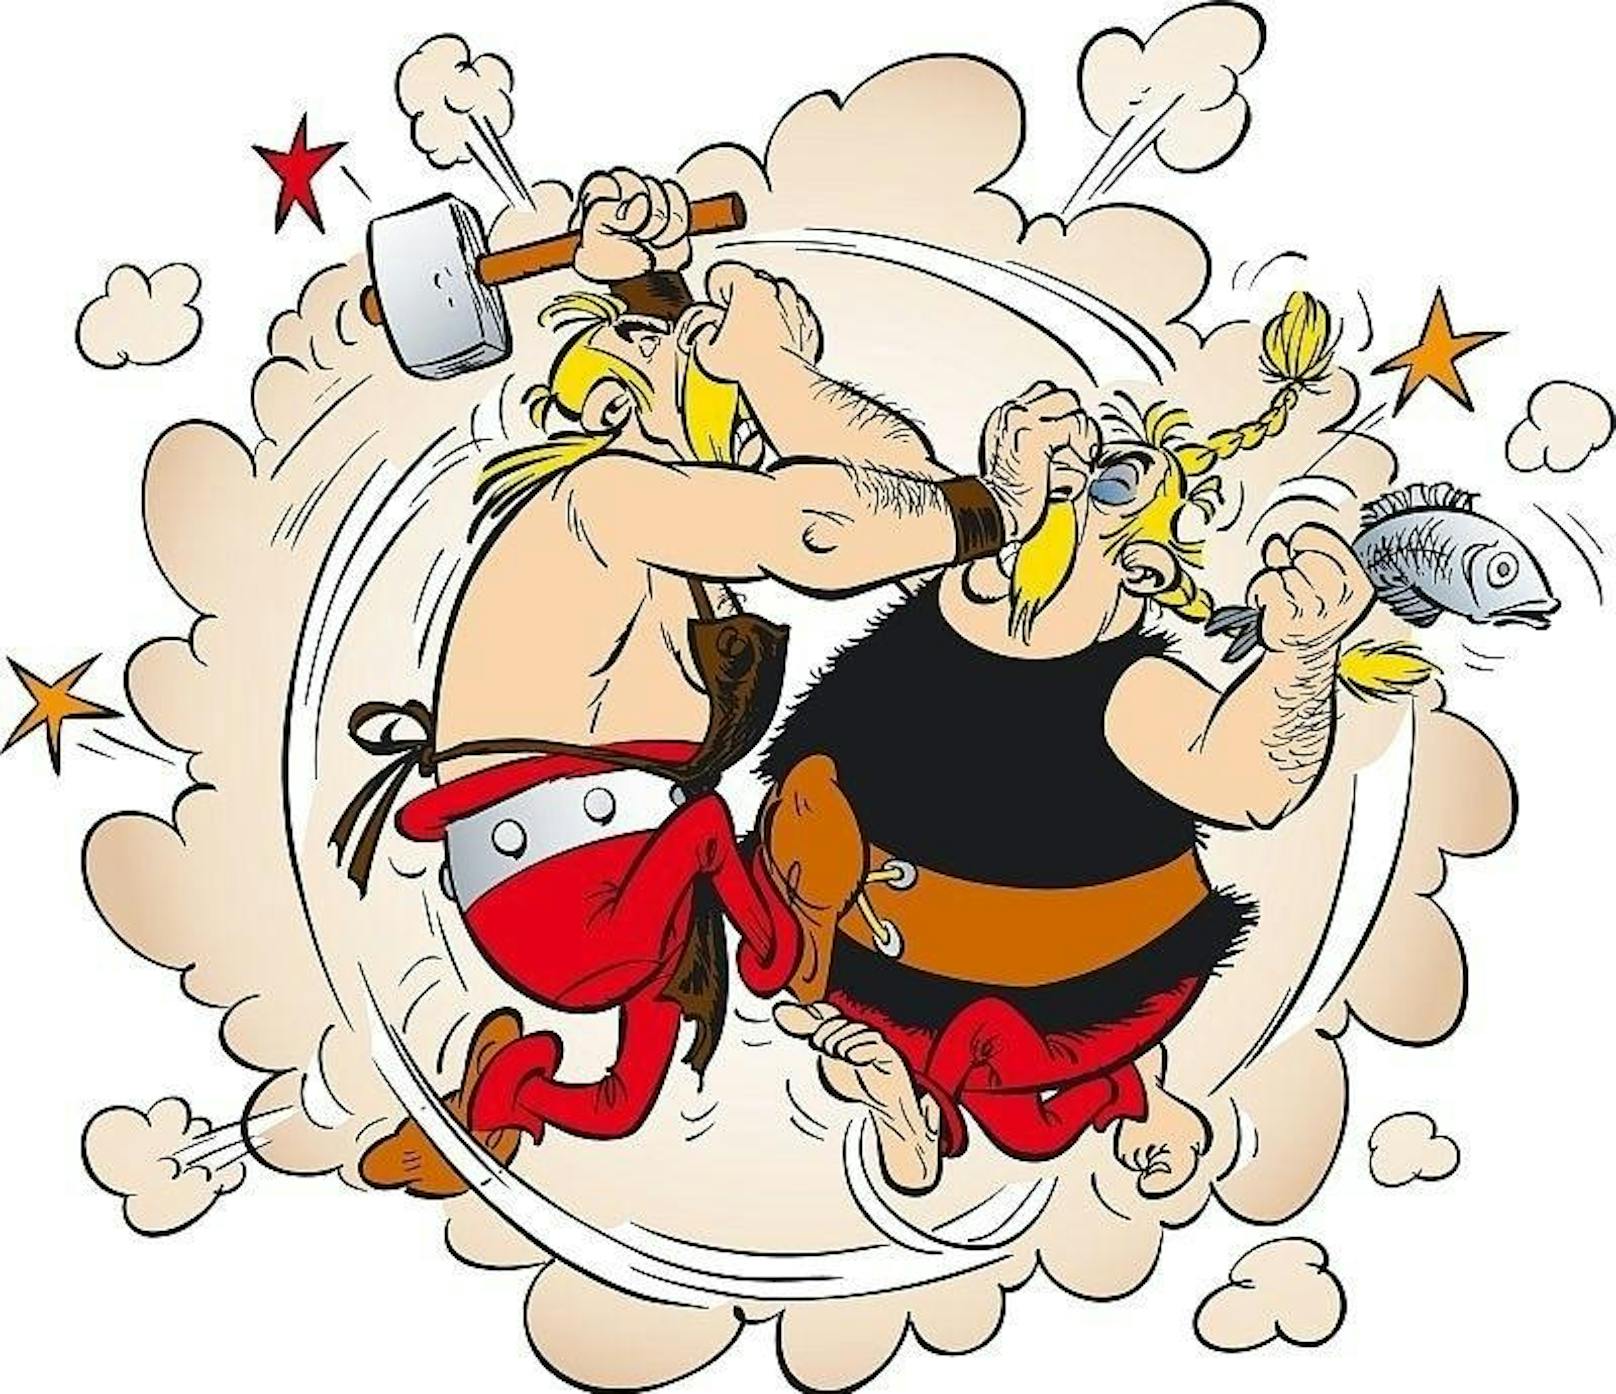 1965 erscheint Asterix erstmals auf Deutsch im Rolf Kaukas Magazin Lupo modern. Asterix und Obelix wurden fürs deutsche Publikum umbenannt. Plötzlich waren die beiden Westgermanen und hießen Siggi und Babarras. Sie wohnten in der "kleinen Fliehburg Bonnhalla". Als Goscinny und Uderzo von der Verfälschung ihrer Serie Wind bekommen, gehen sie gerichtlich dagegen vor und entziehen Kauka alle Rechte.